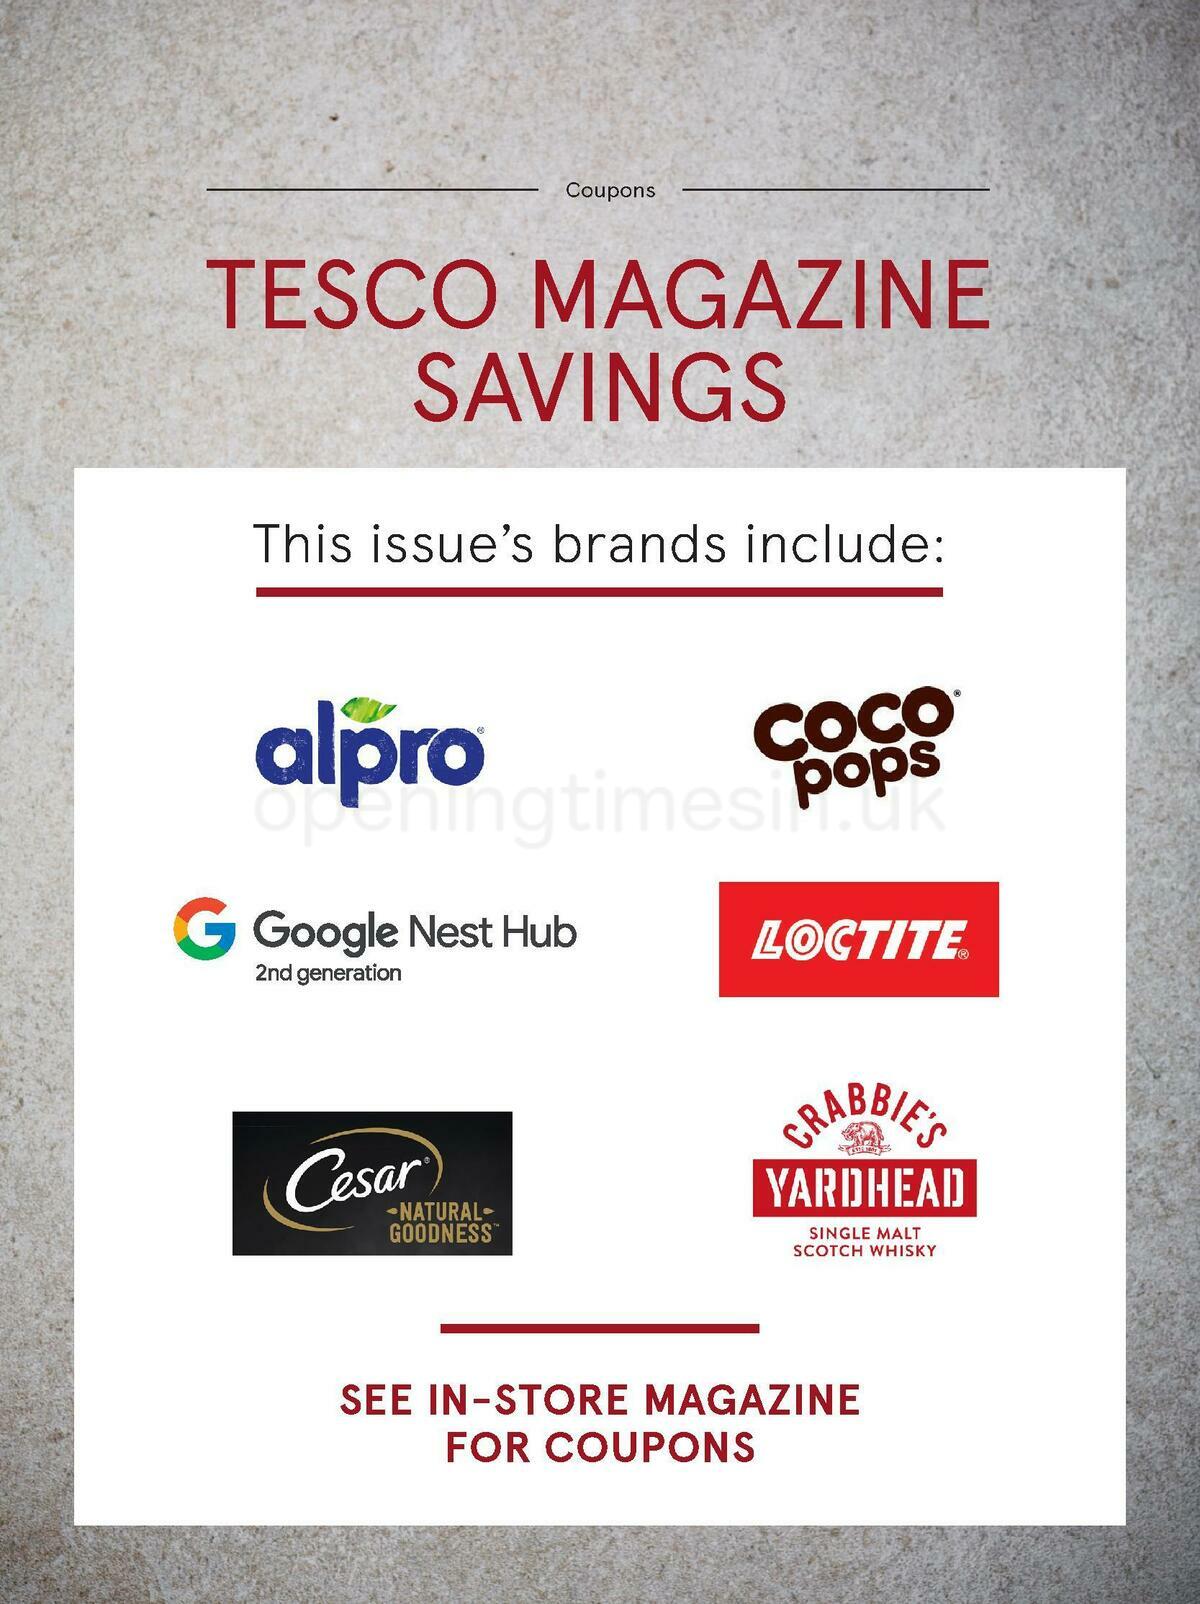 TESCO Magazine September Offers from 1 September